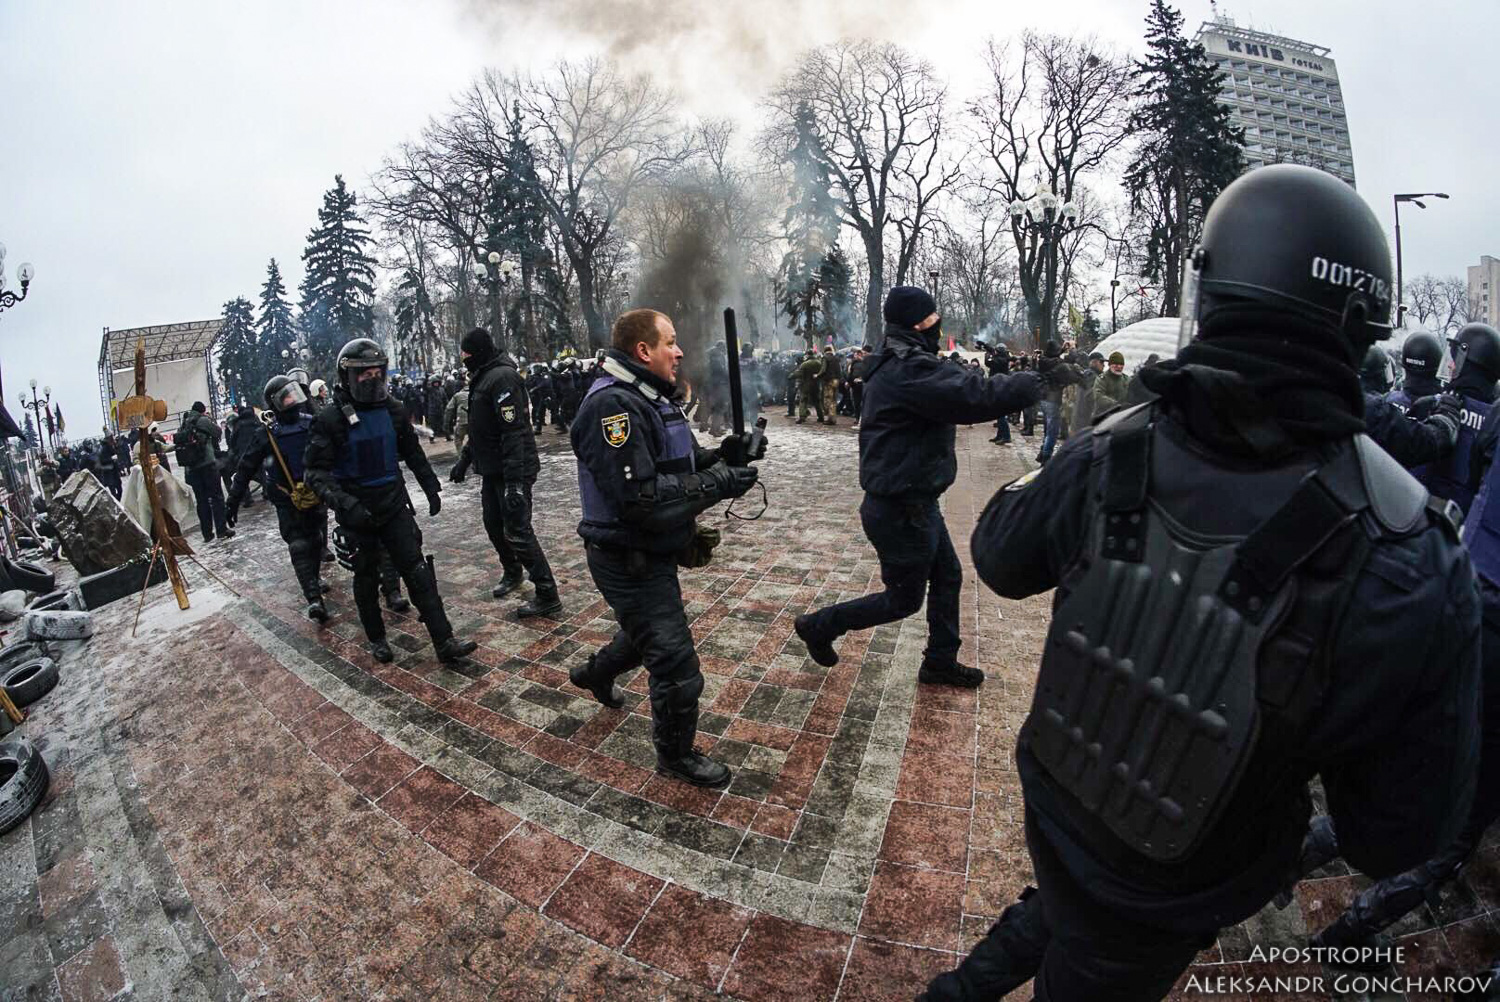 sanctions - Ukraine News in brief. Tuesday 16 January. [Ukrainian sources] 0f26bce0d13d39dc2de710246ac7af38